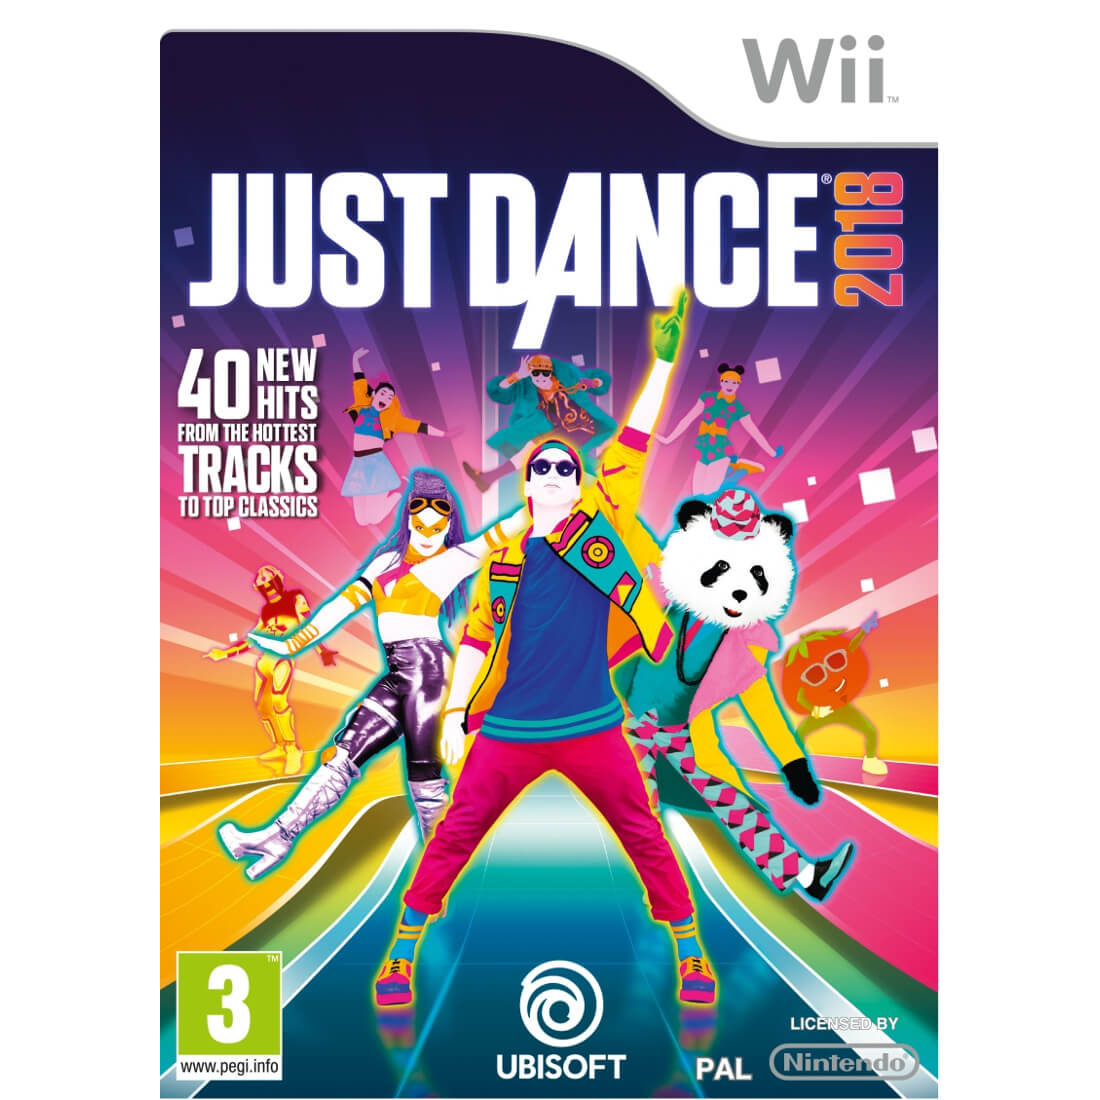  Joc Nintendo Wii Just Dance 2018 